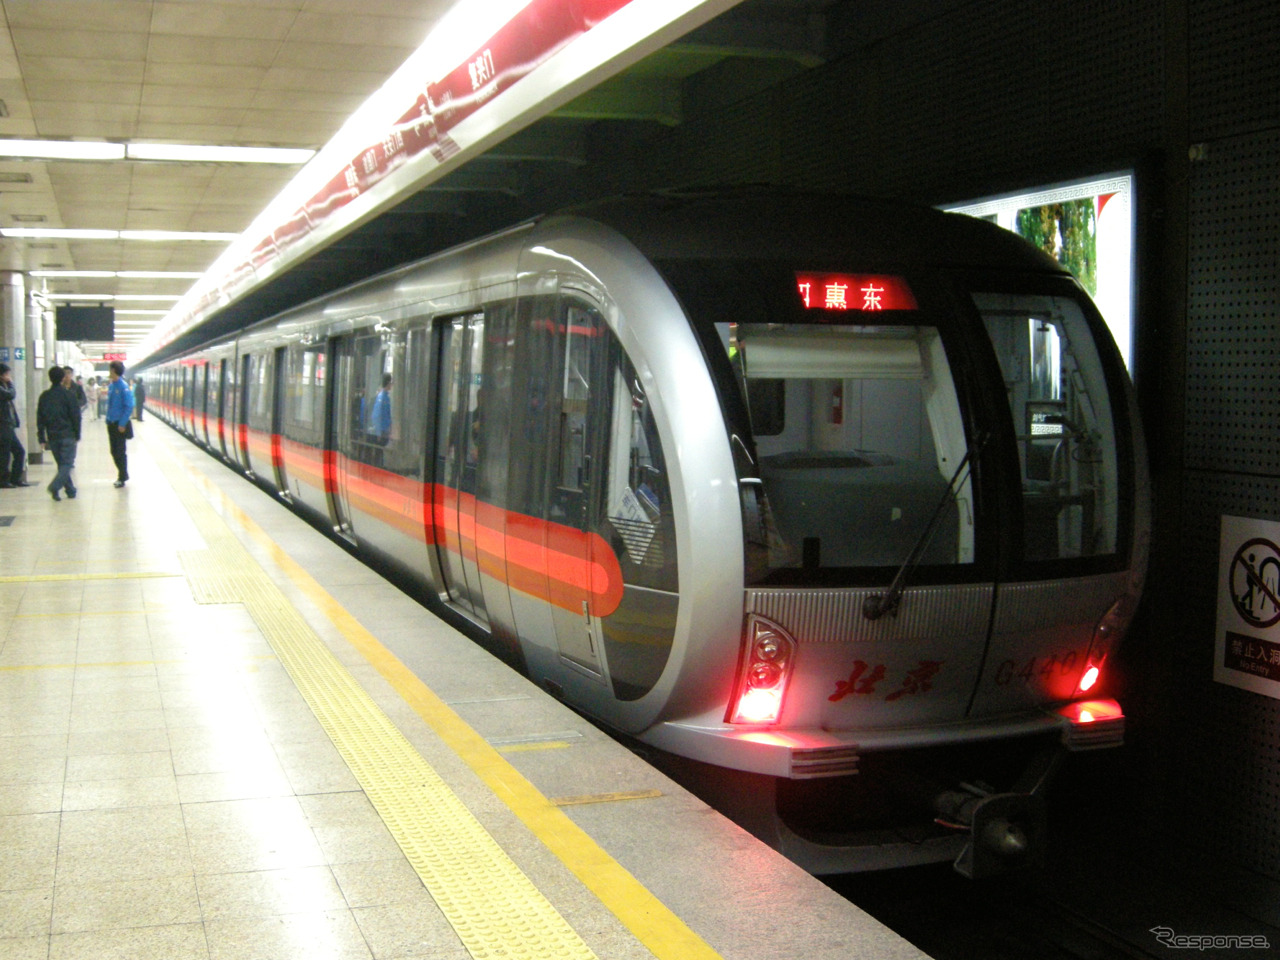 海外では無線式制御システムの普及が進んでいる。フランス・アルストムのシステムをベースにした「Urbalis 888」を使用している北京地下鉄1号線の電車